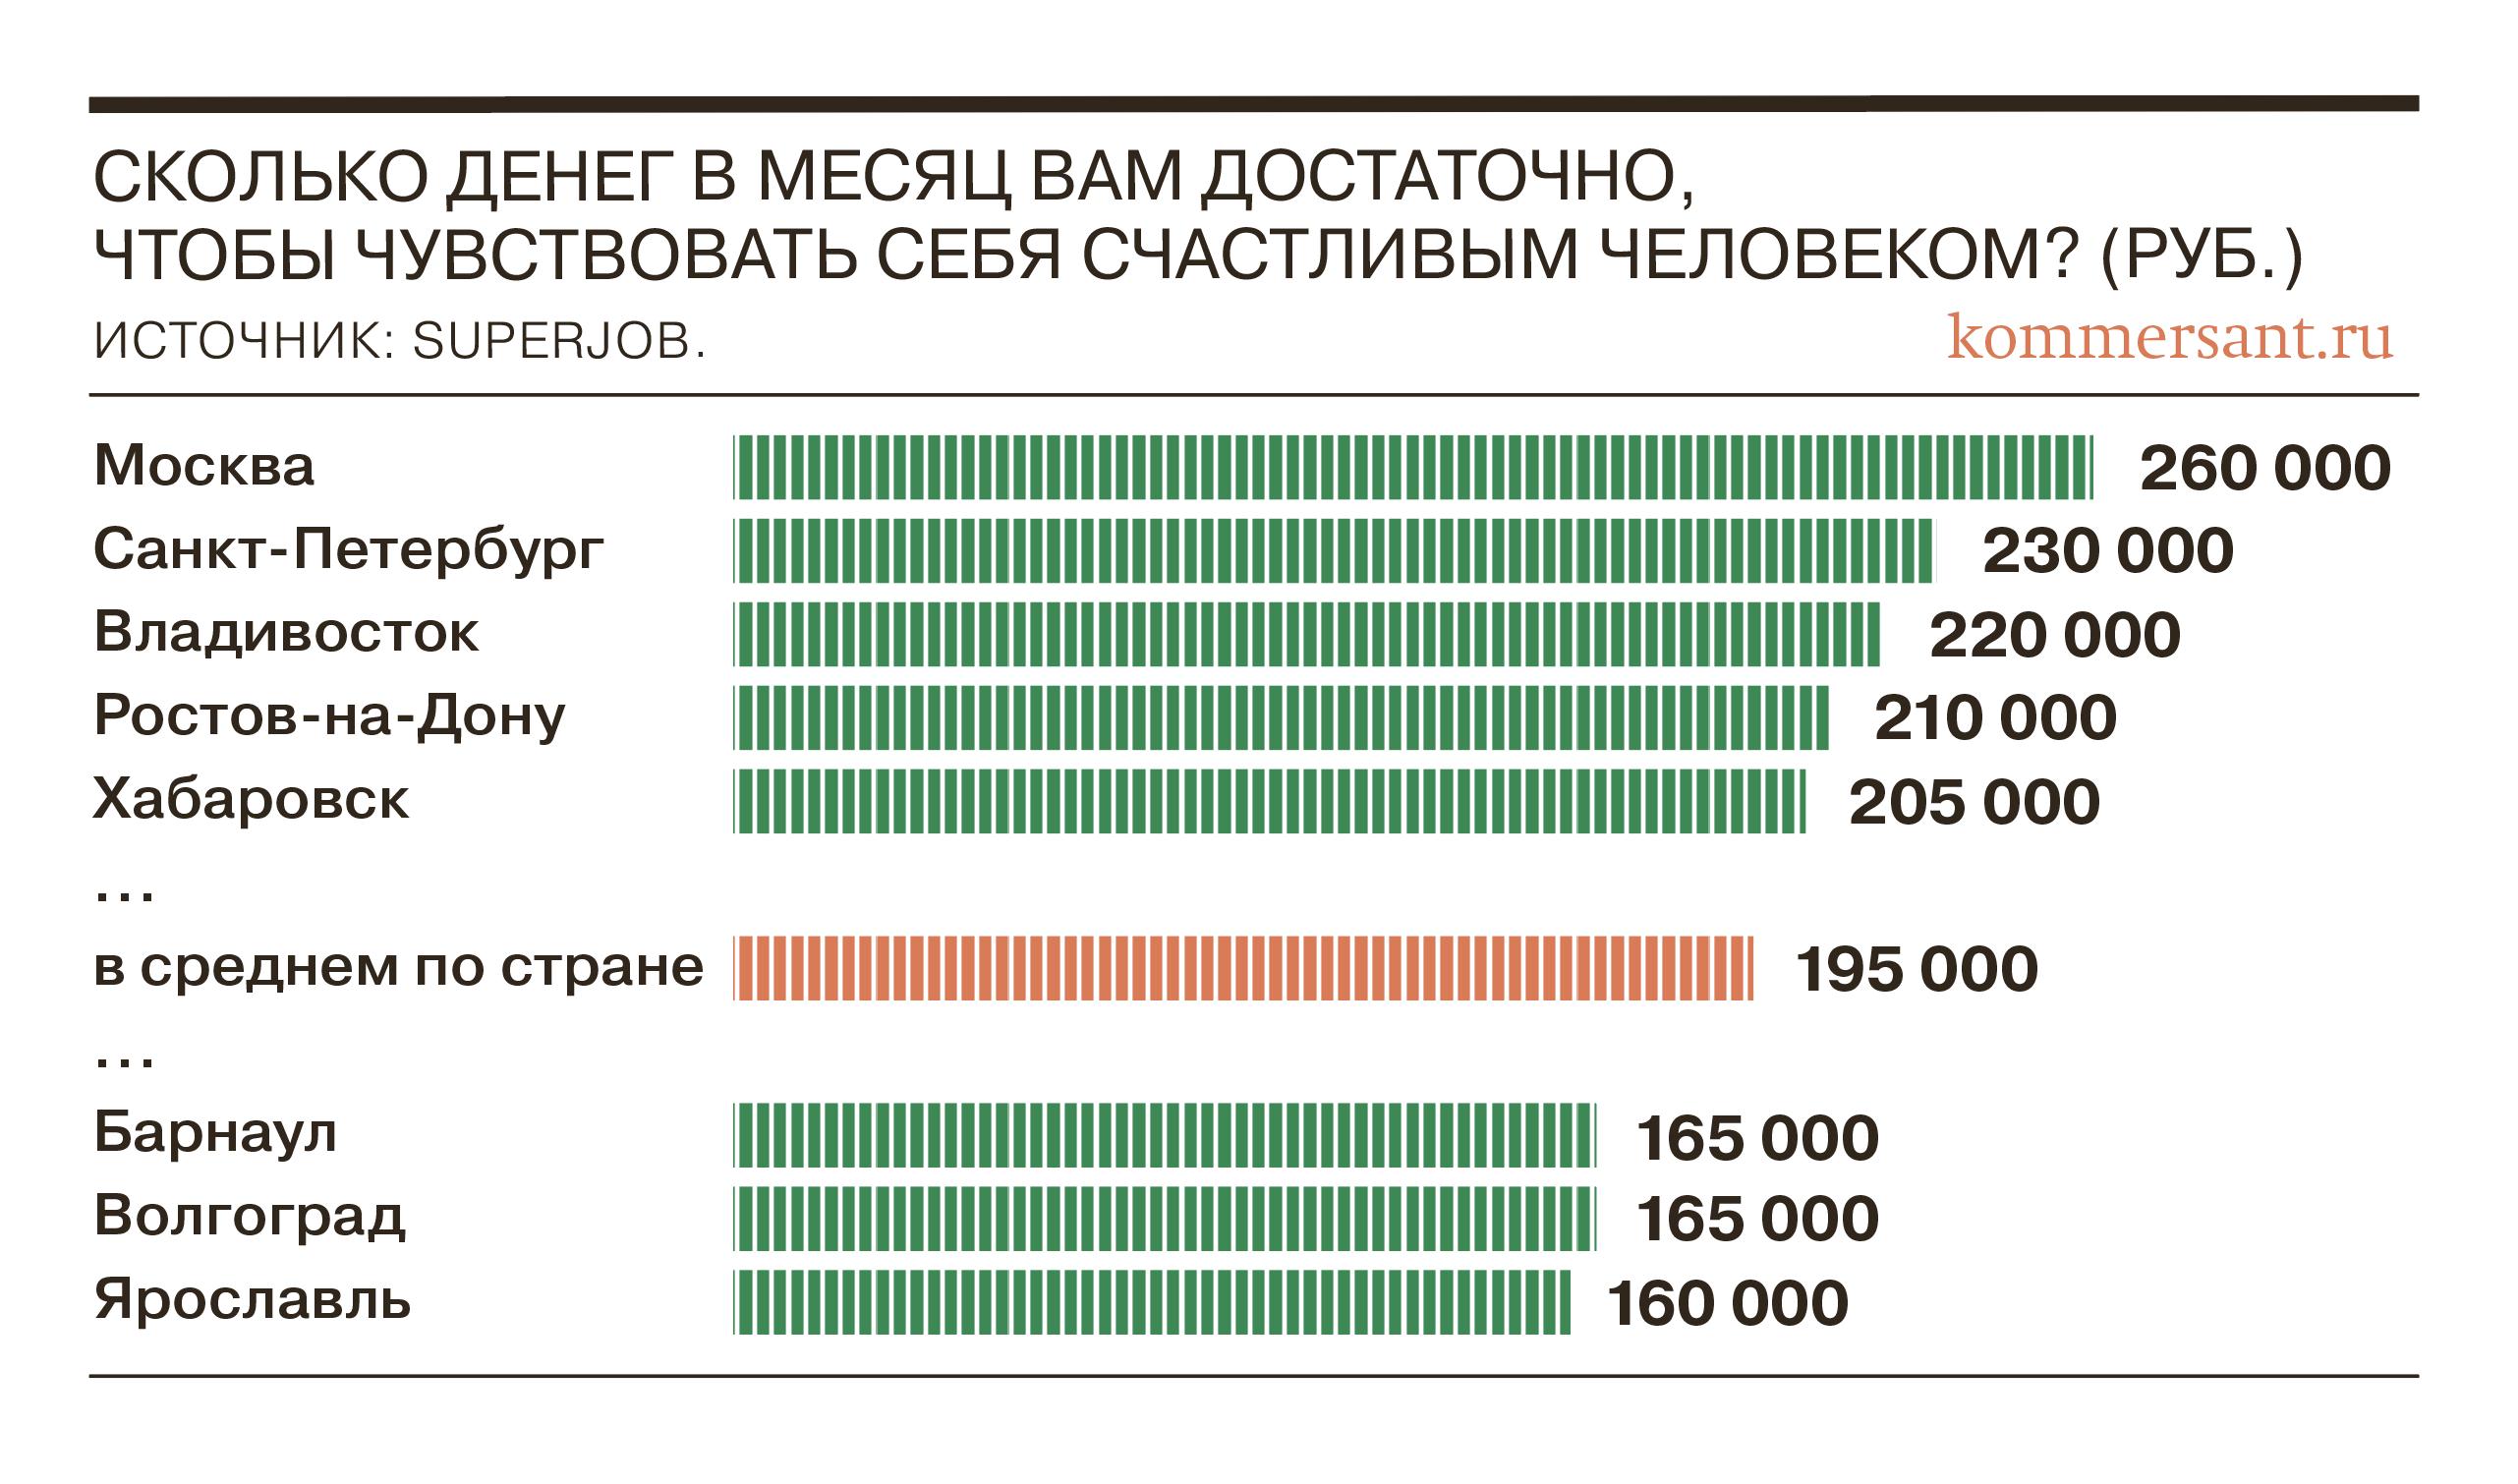 Среднему россиянину нужно для счастья 195 тыс. рублей в месяц, москвичу — 260 тыс.